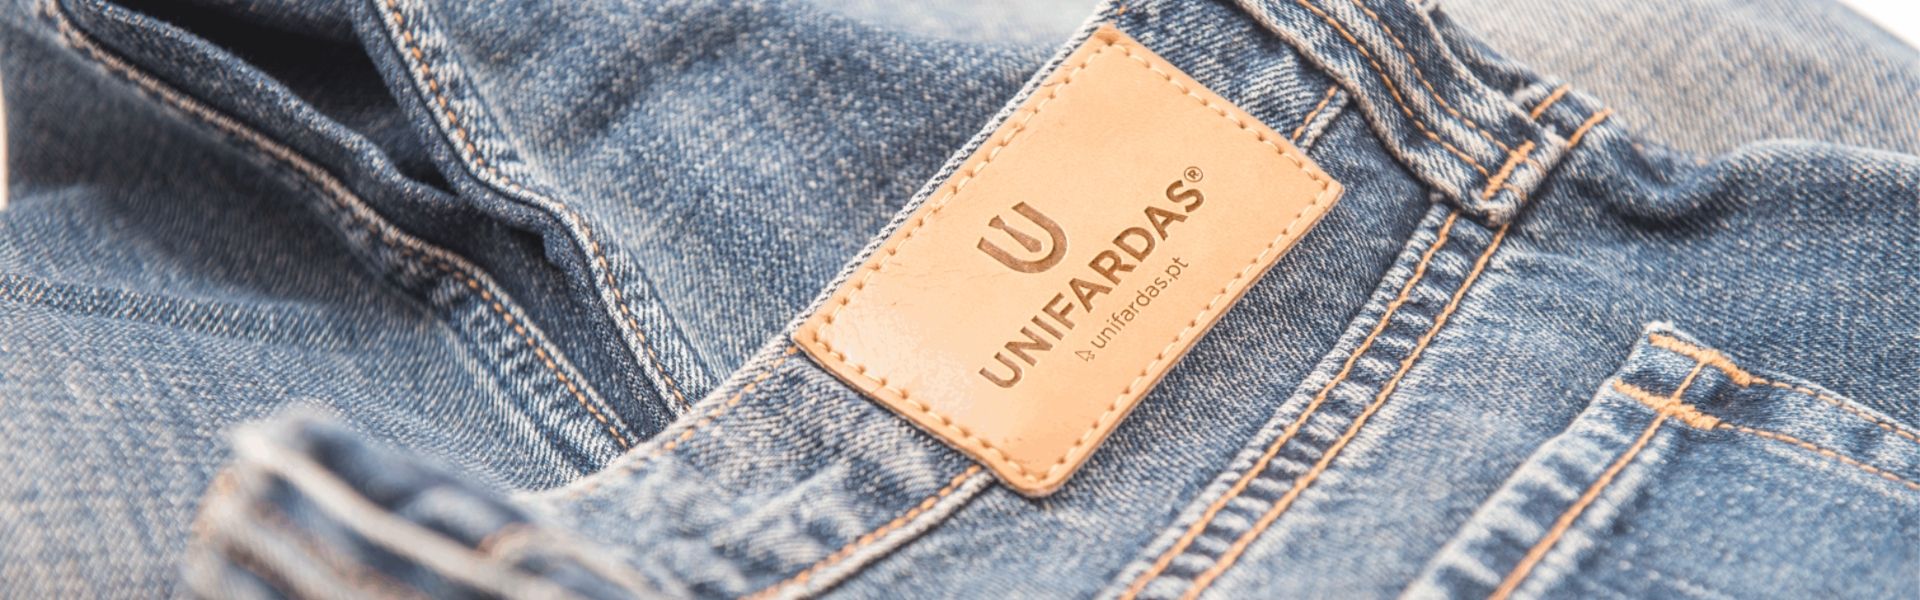 unifardas workwear uniformes